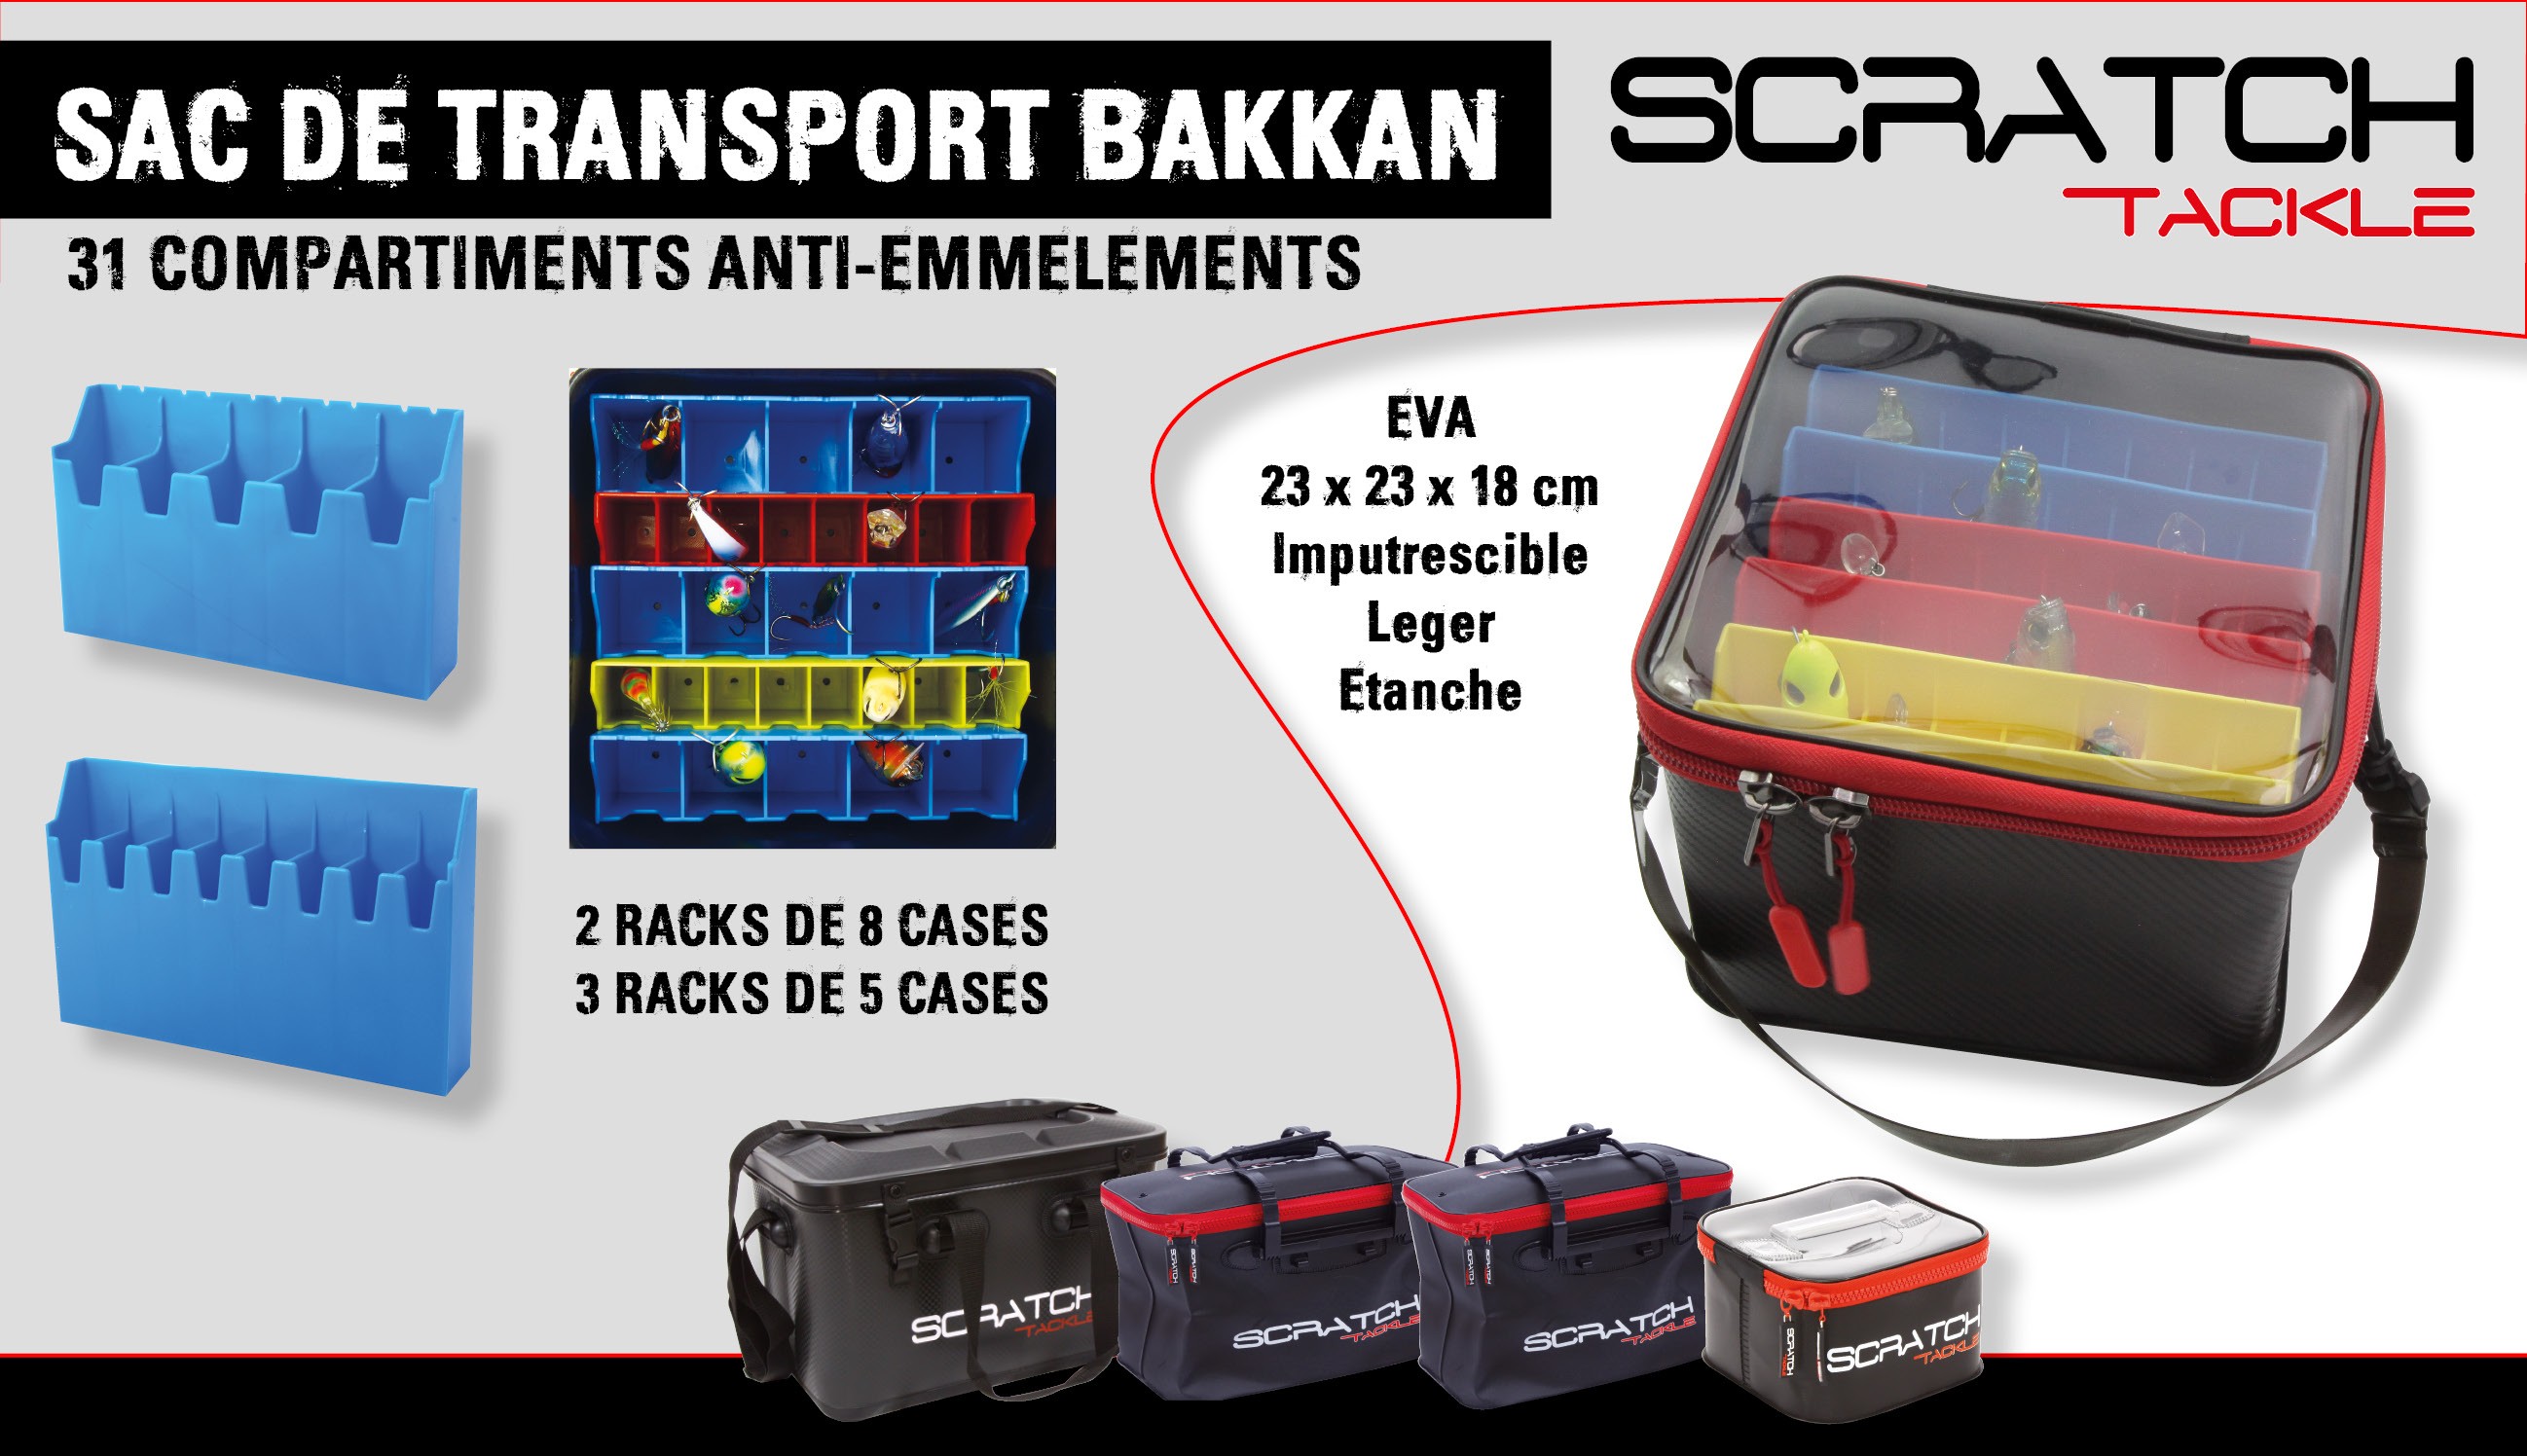 détails du bakkan 31 compartiments Scratch Tackle